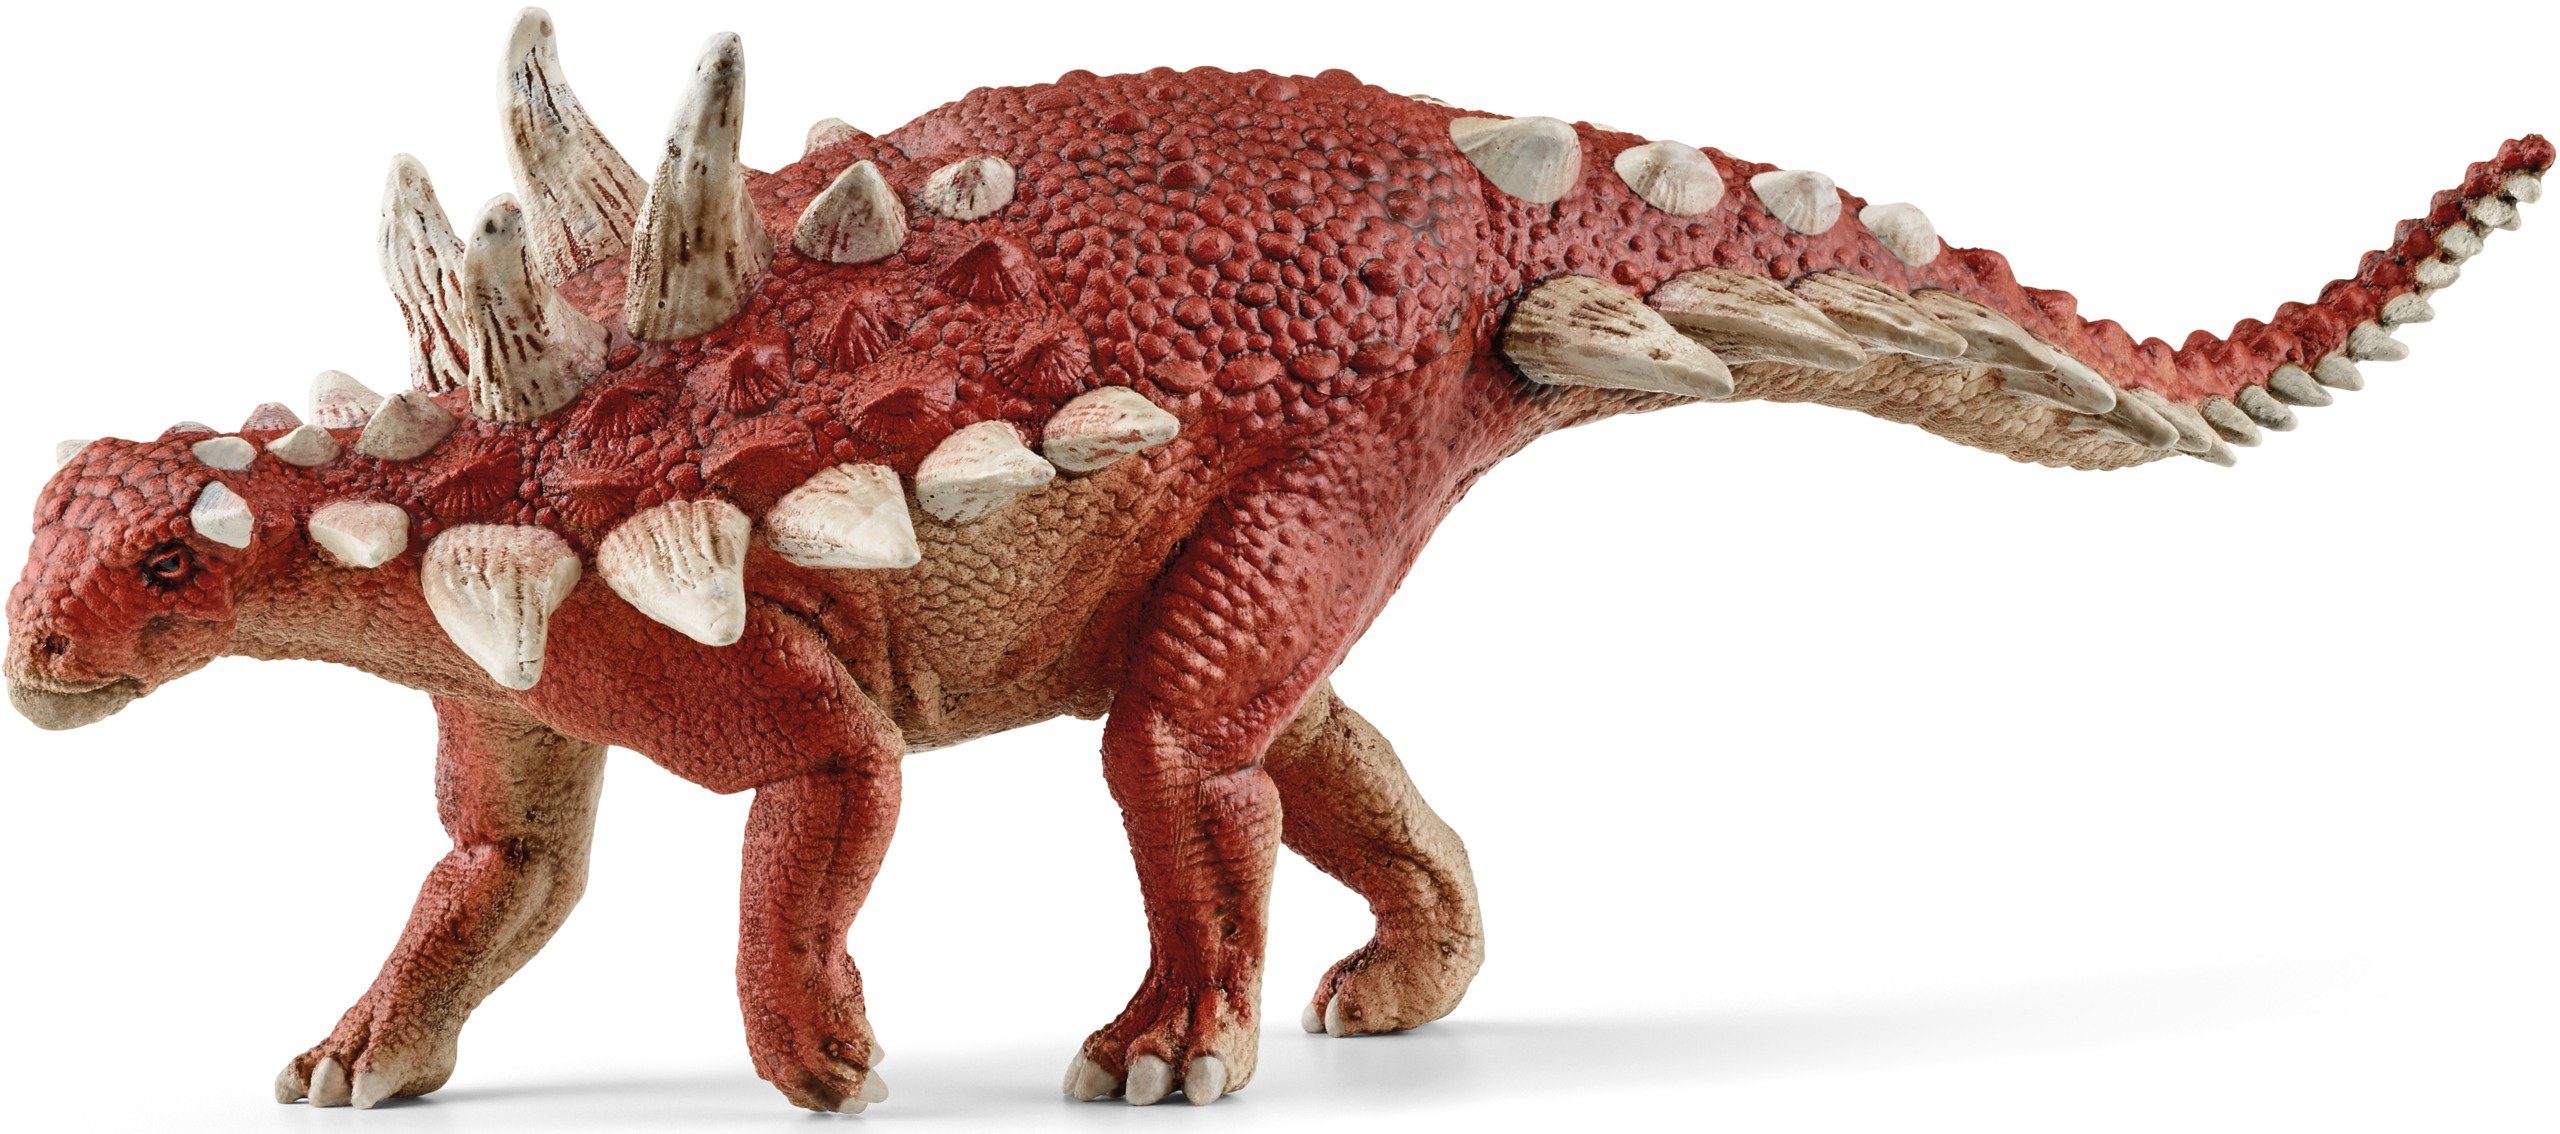 Schleich Dinosaurs Bajadasaurus 15042